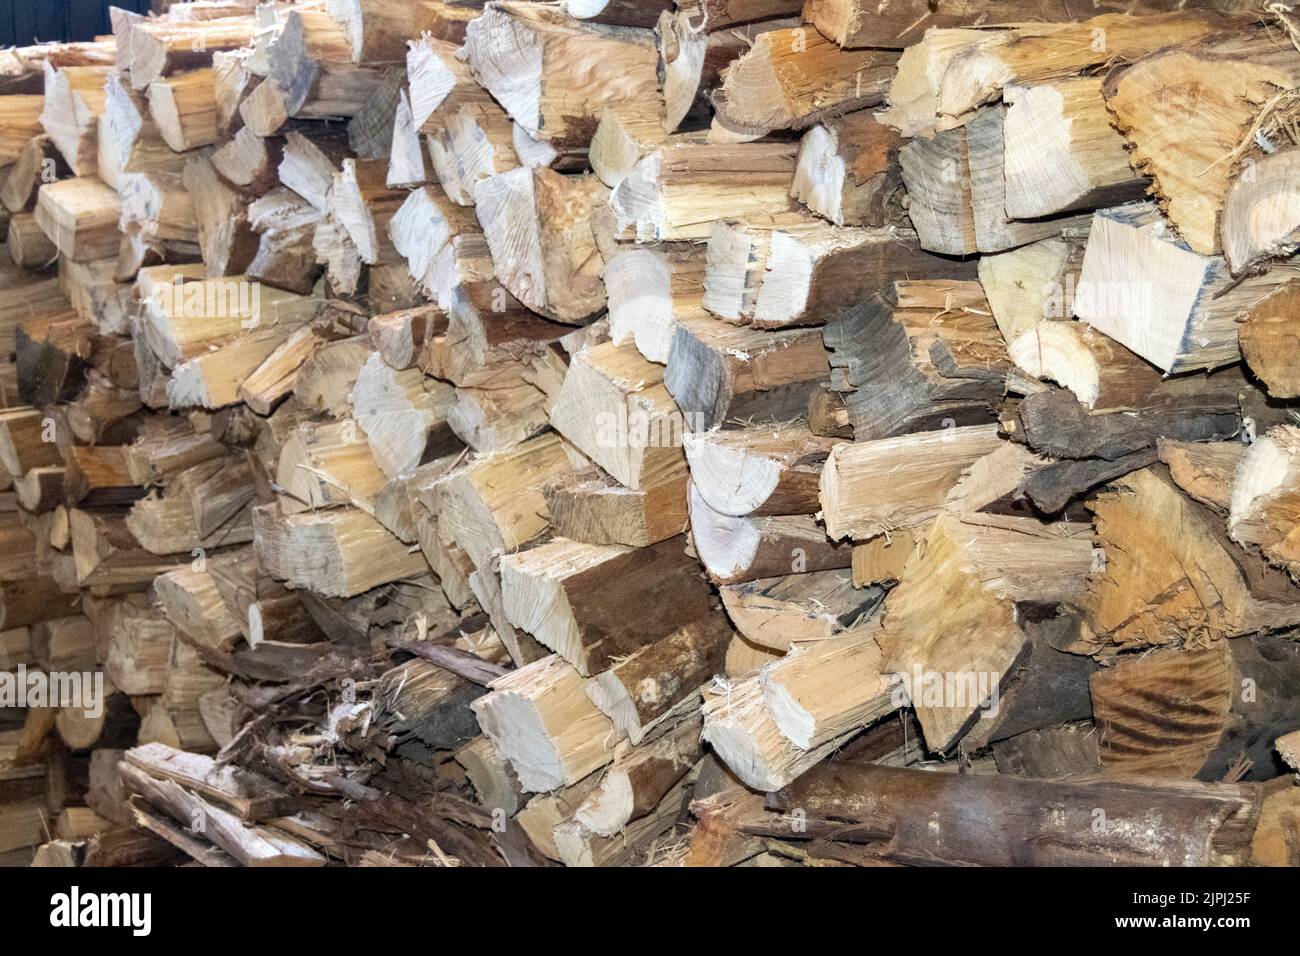 Almacenamiento de madera para el invierno, la energía de alto coste alternativa para el calentamiento de las casas. La energía de madera para usar como el combustible. Electricidad y gas altos costos. Foto de stock